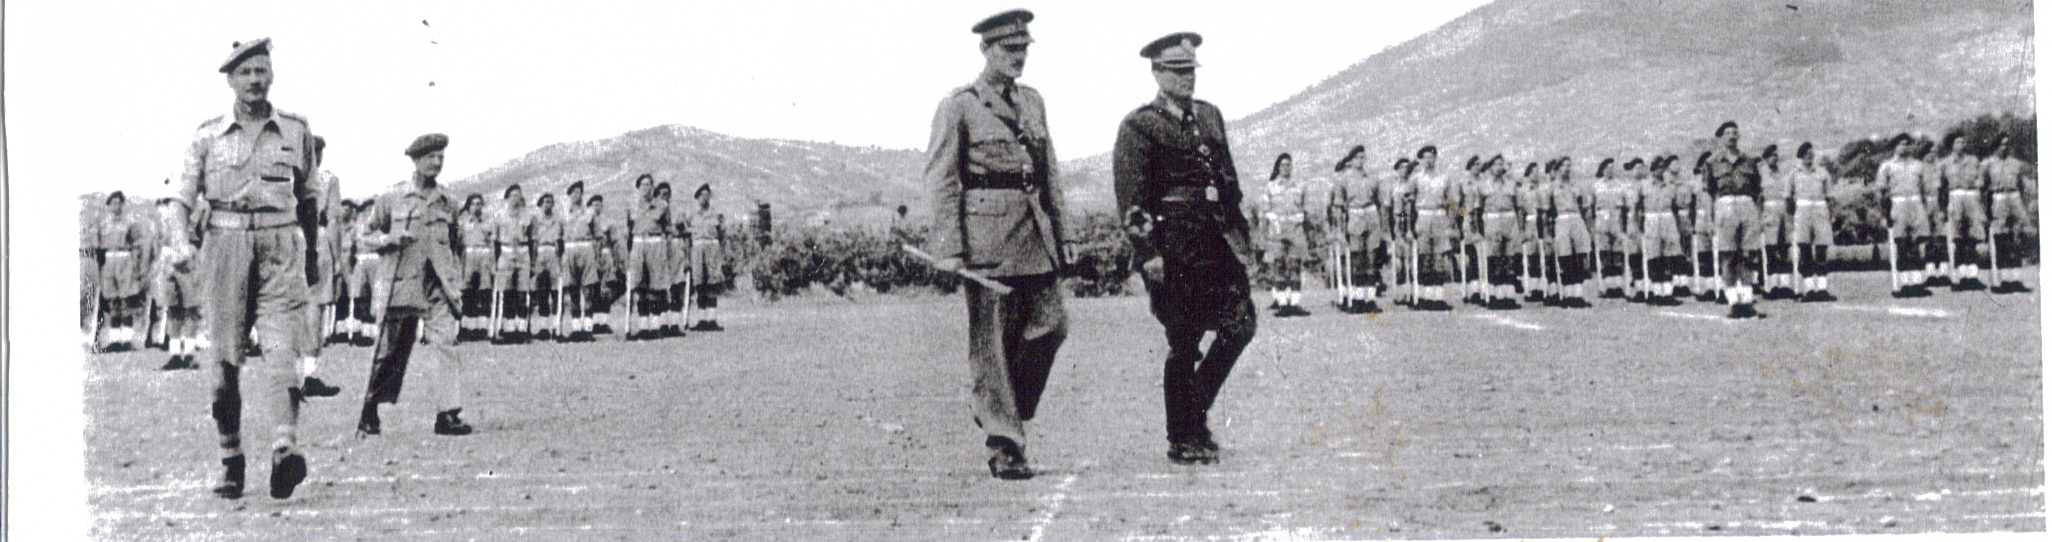 Marshall Tito inspects No. 2 Commando, June 1944